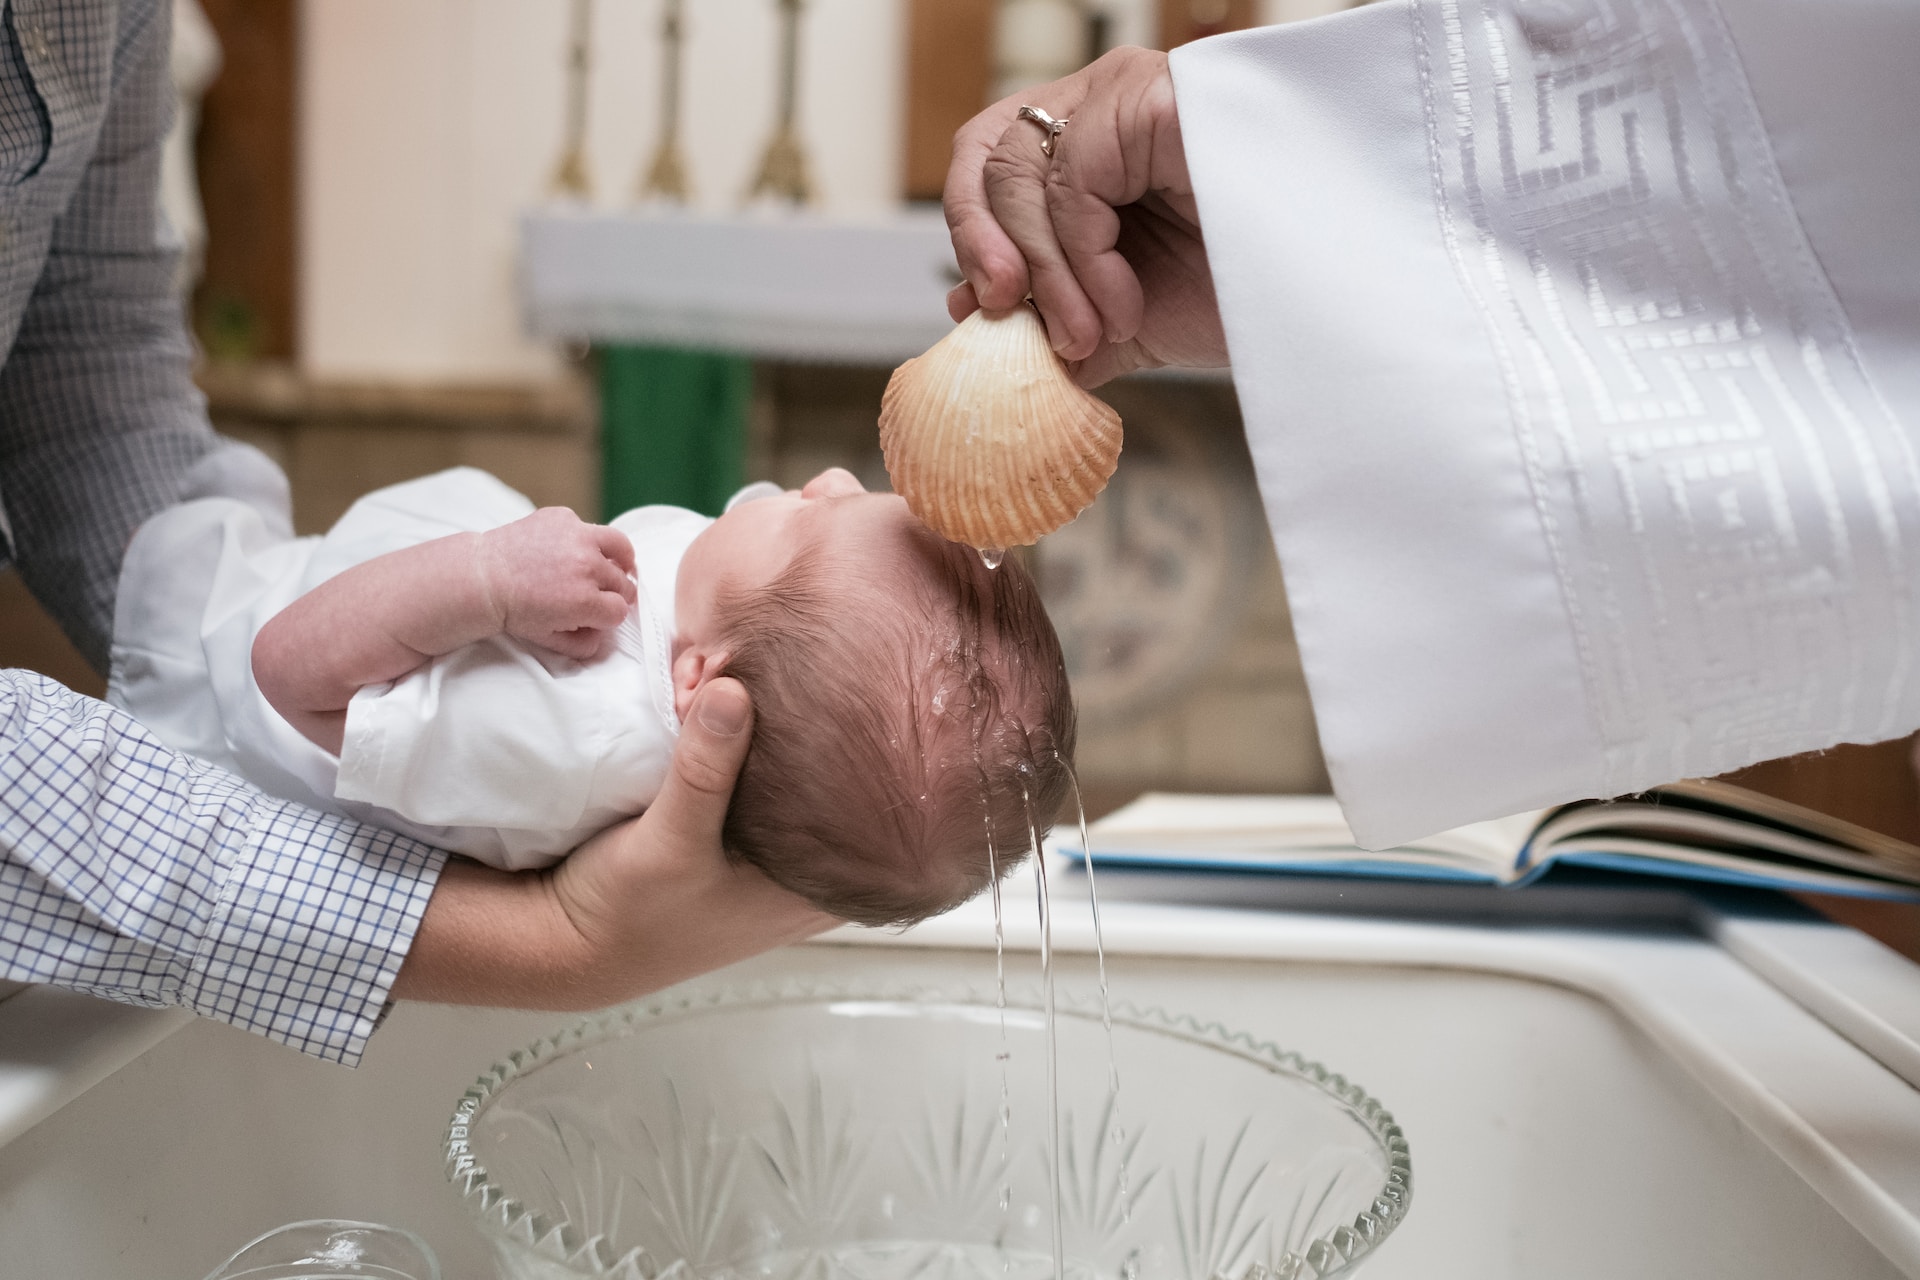 Baptizing an infant